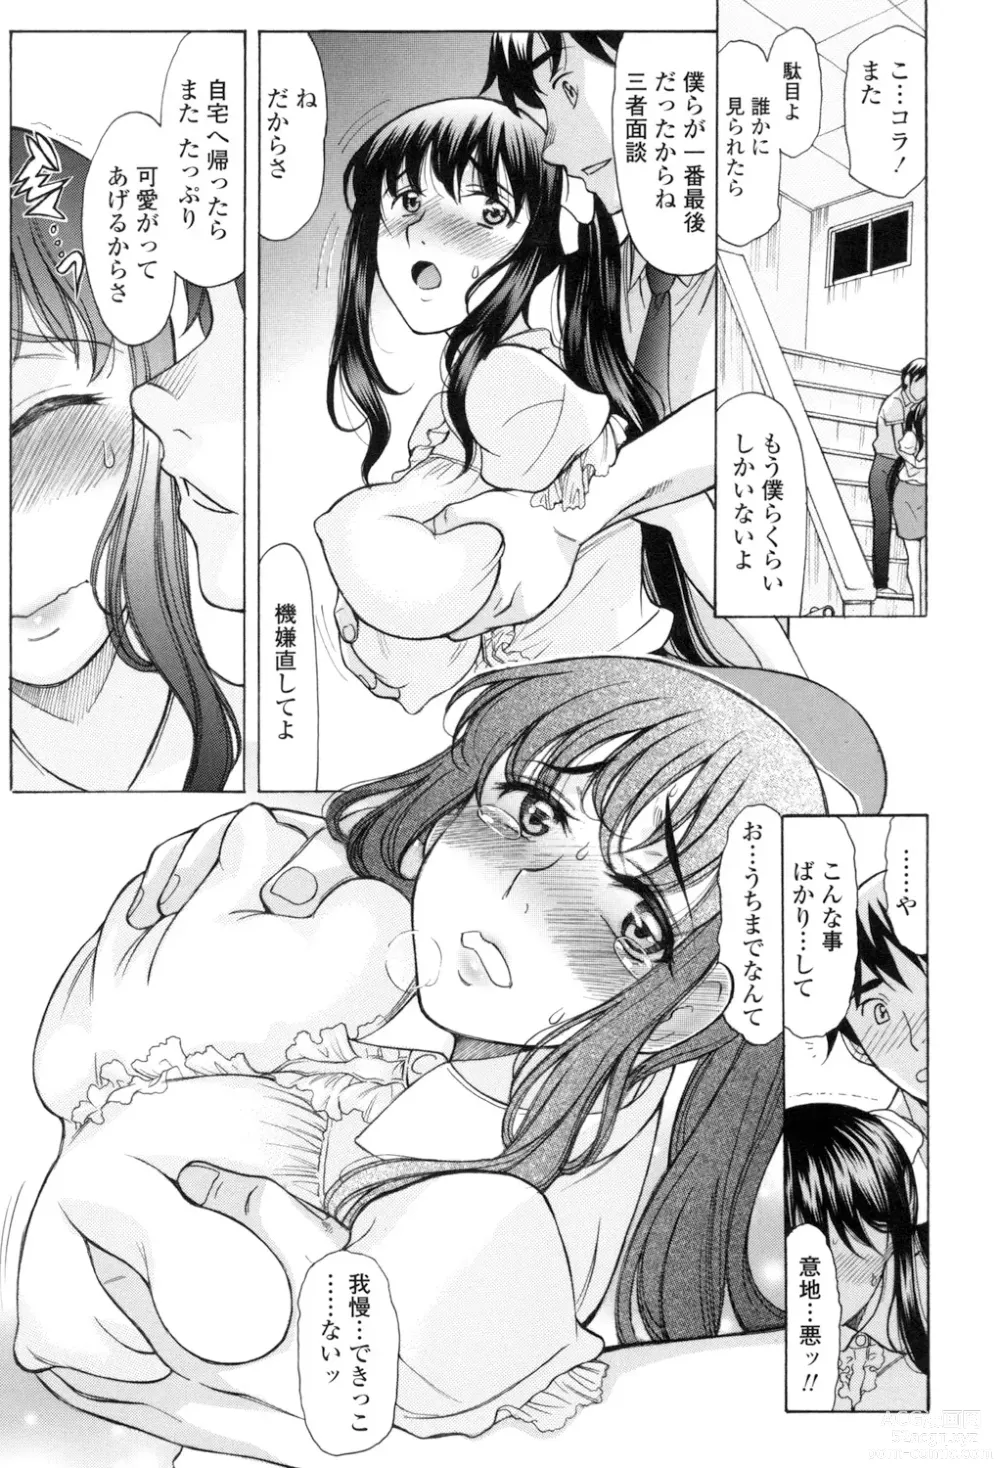 Page 28 of manga Yasashiku Okashite - Please Softly Raping